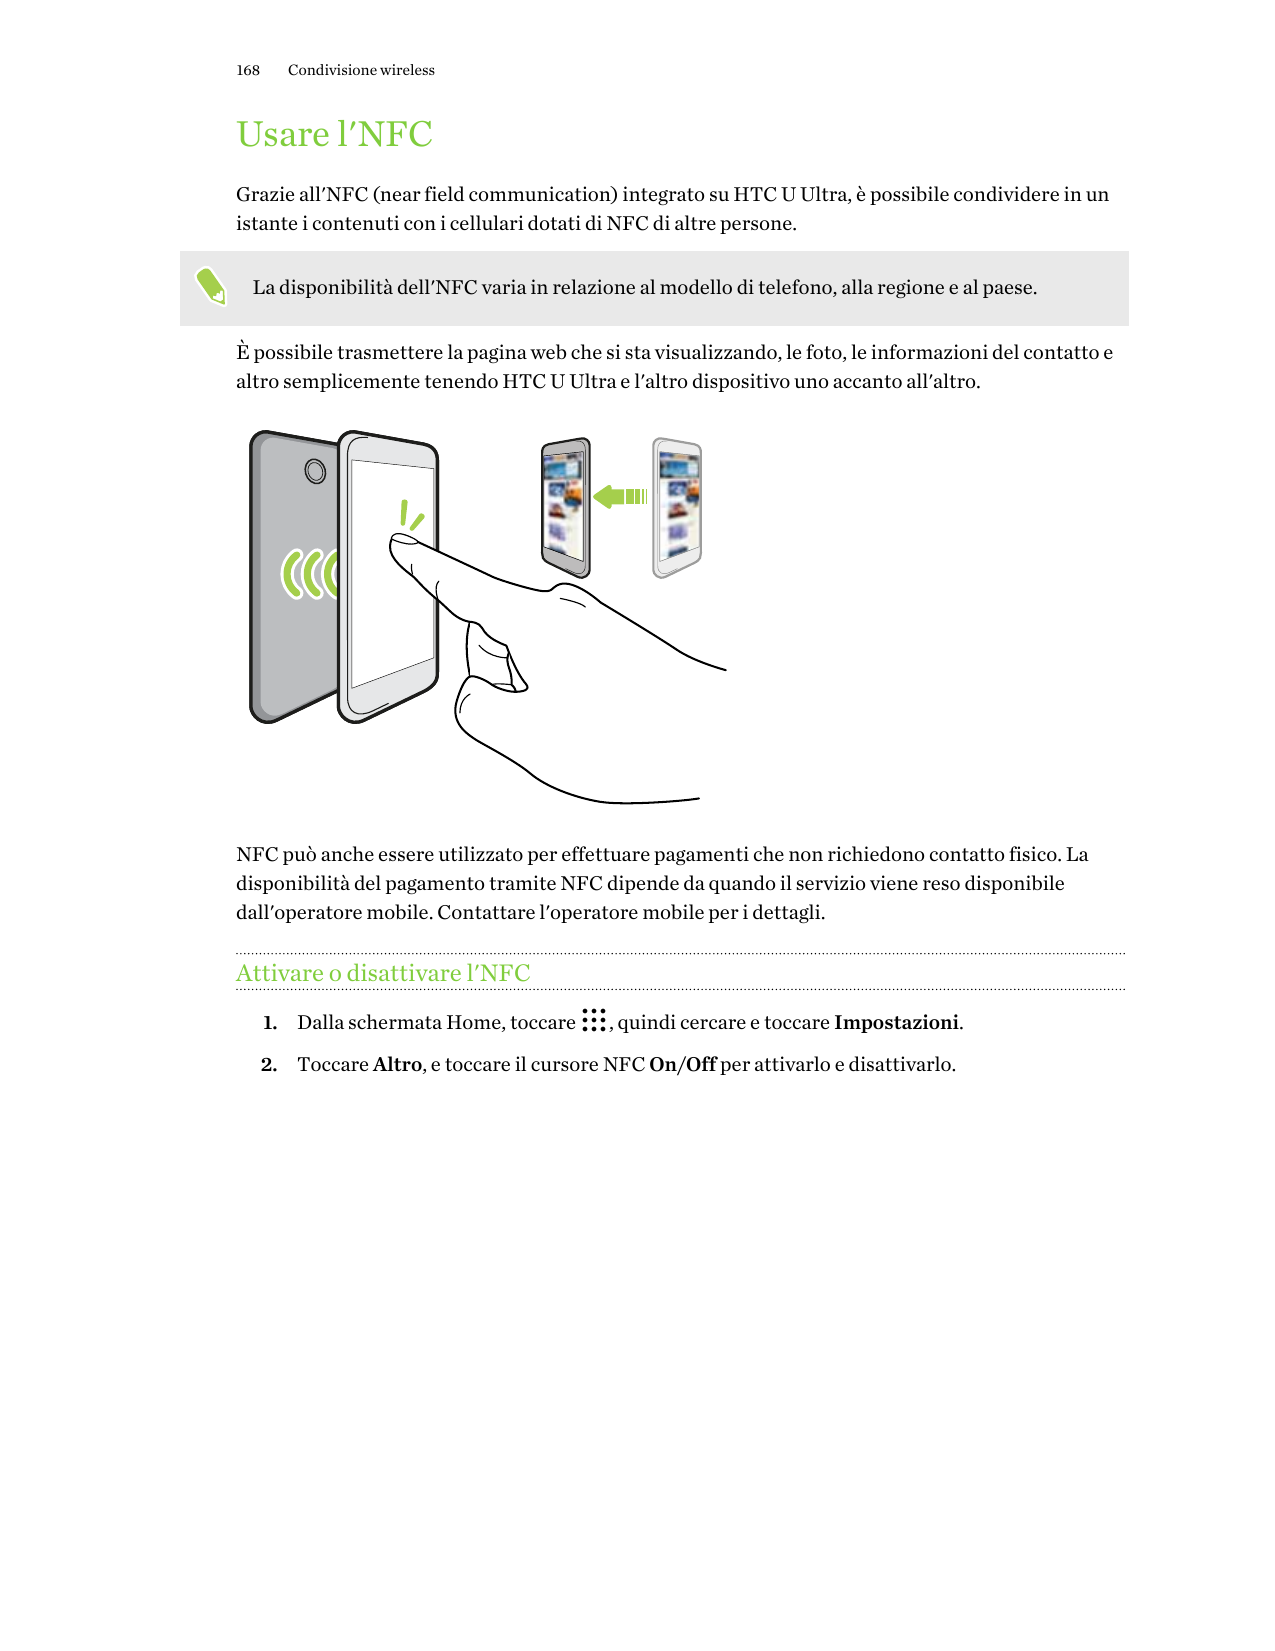 168Condivisione wirelessUsare l'NFCGrazie all'NFC (near field communication) integrato su HTC U Ultra, è possibile condividere i